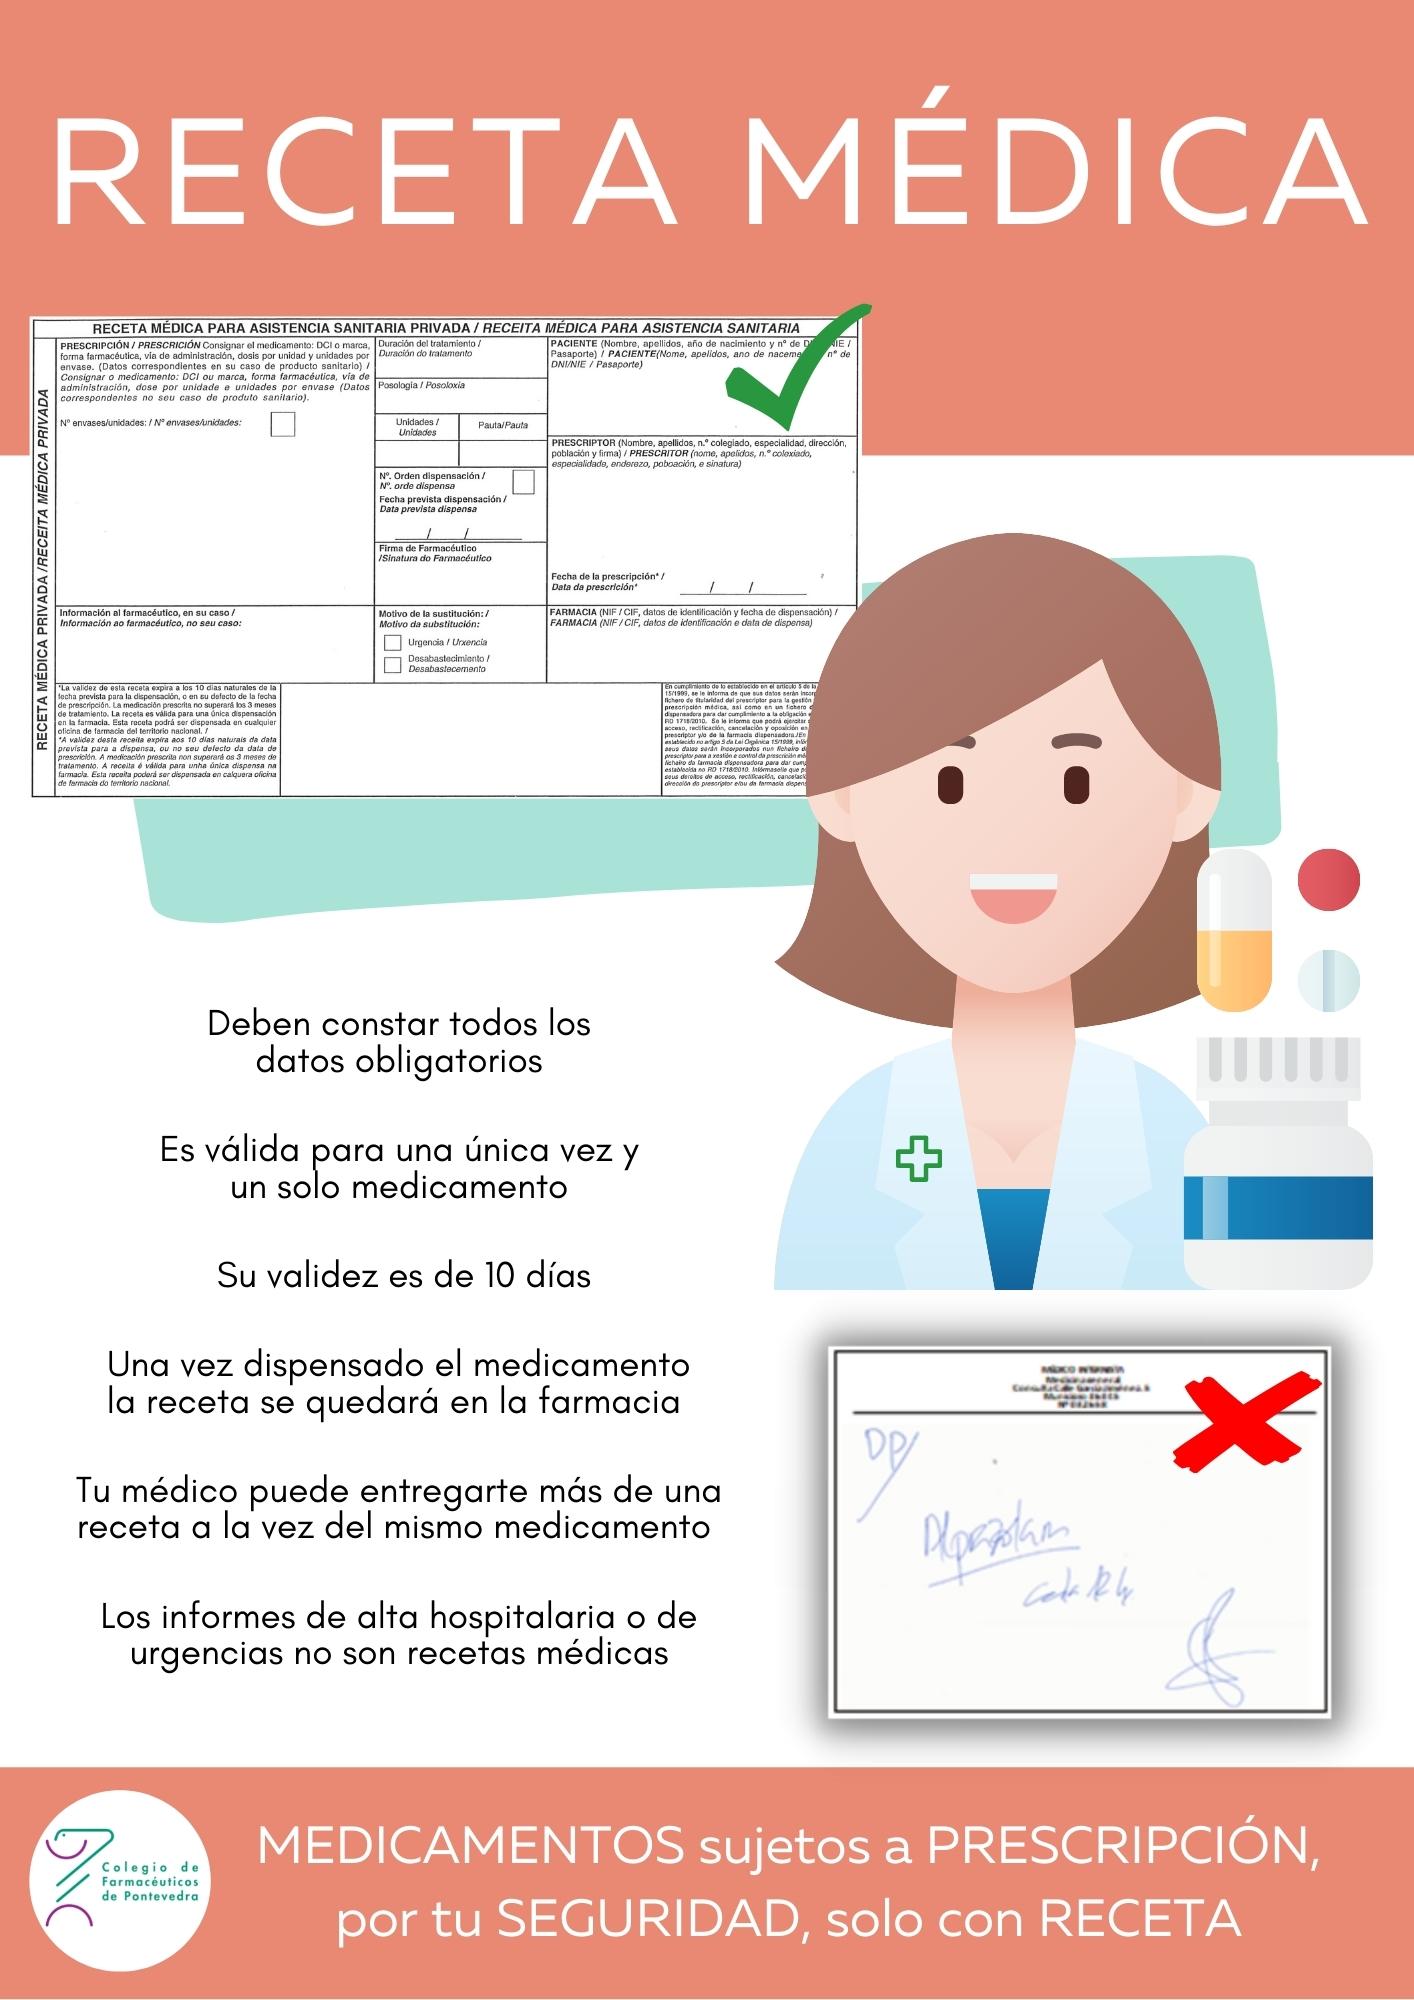 Campaña “Receta Médica” - Colegio de Farmacéuticos de Pontevedra